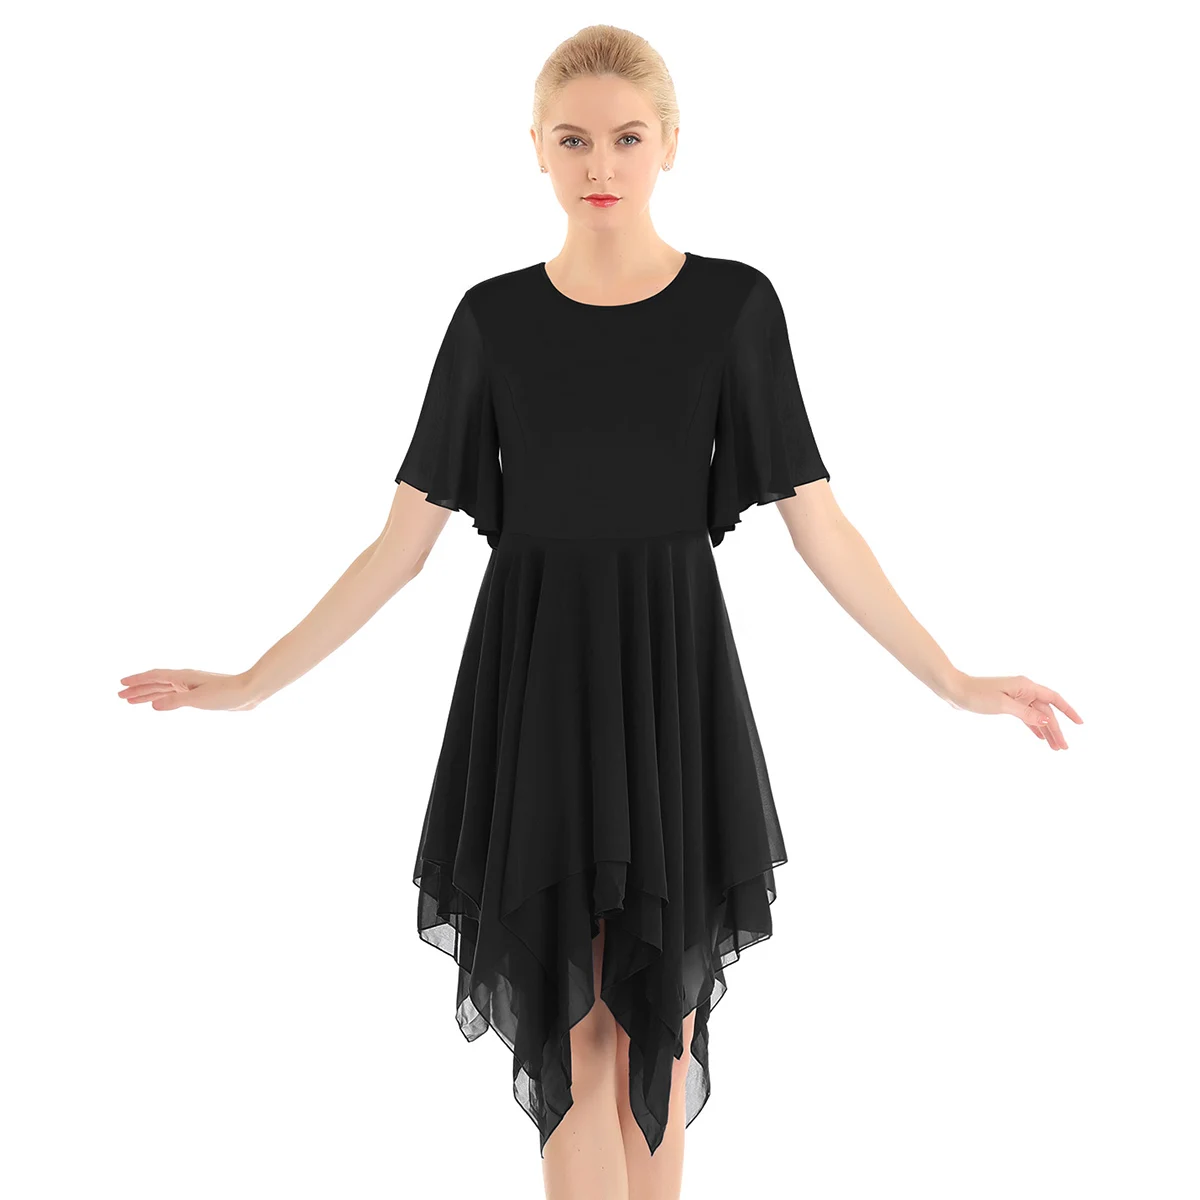 ChicTry взрослый Асимметричный плотный шифон, цвет современный Лирический танцевальные костюмы для женщин Фигурное катание балетное трико платье - Цвет: Black